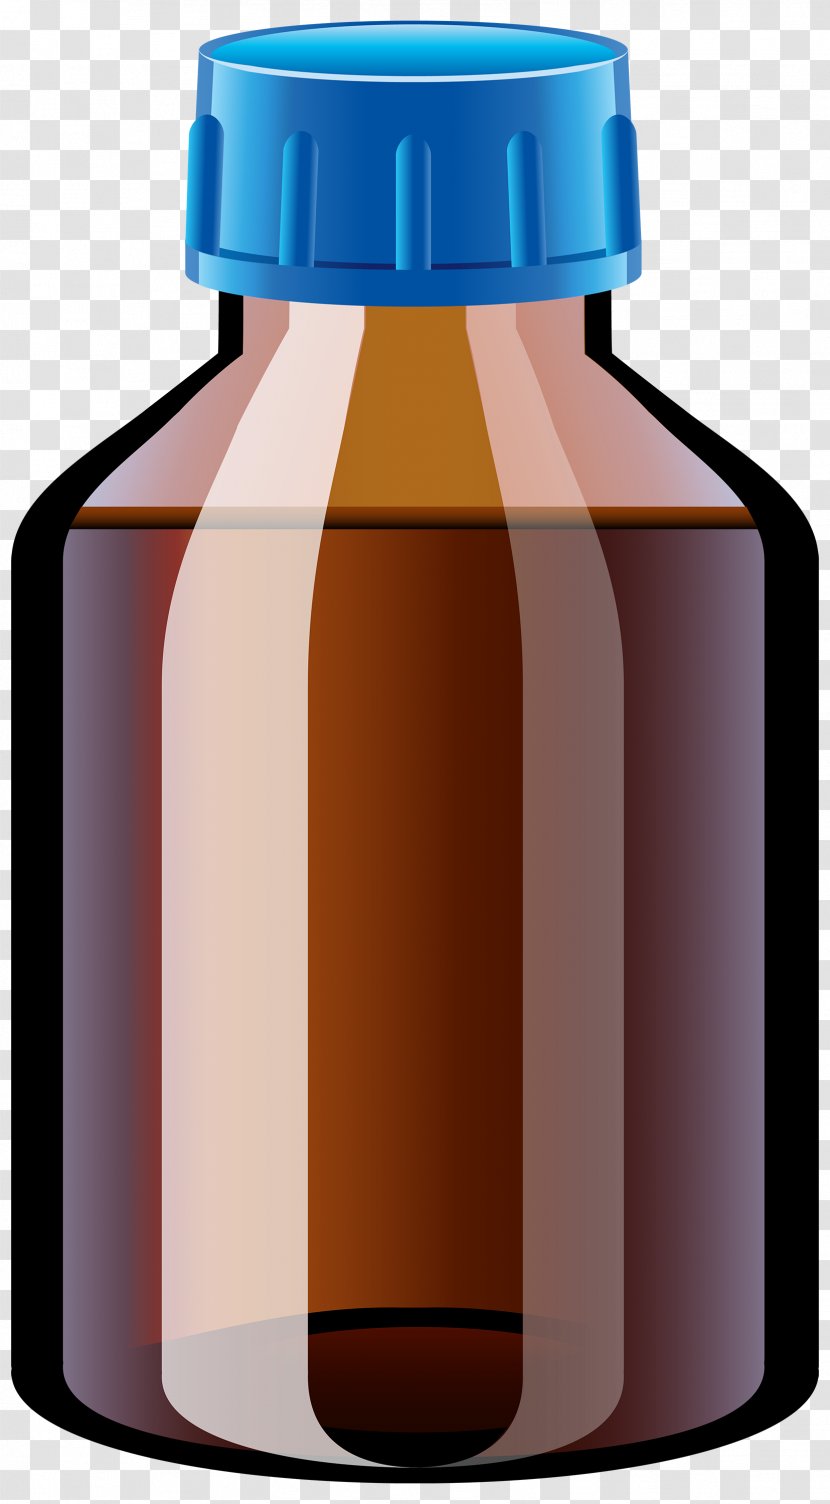 Pharmaceutical Drug Tablet Bottle Clip Art - Drinkware Transparent PNG